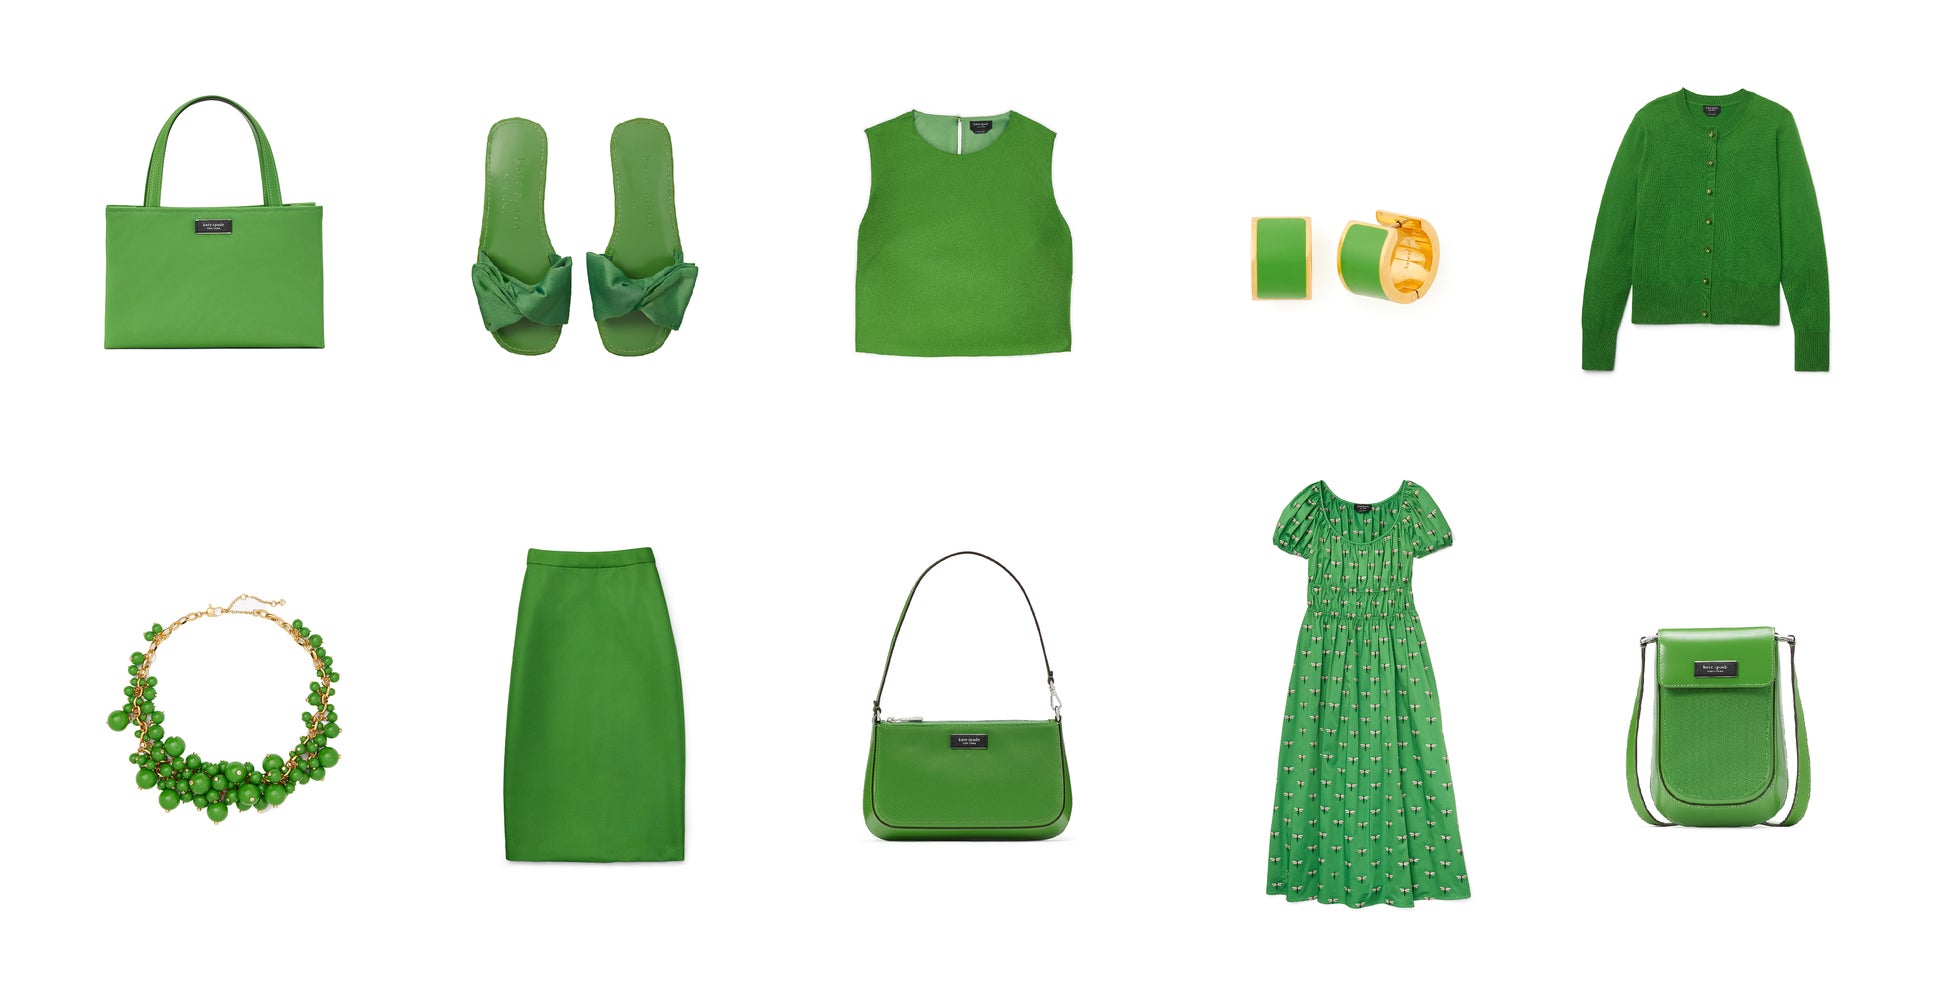 ケイト・スペード ニューヨークは、ブランド創業30周年を記念し、パントン社と共に開発した「ケイト・スペード グリーン」カラーを発表のサブ画像2